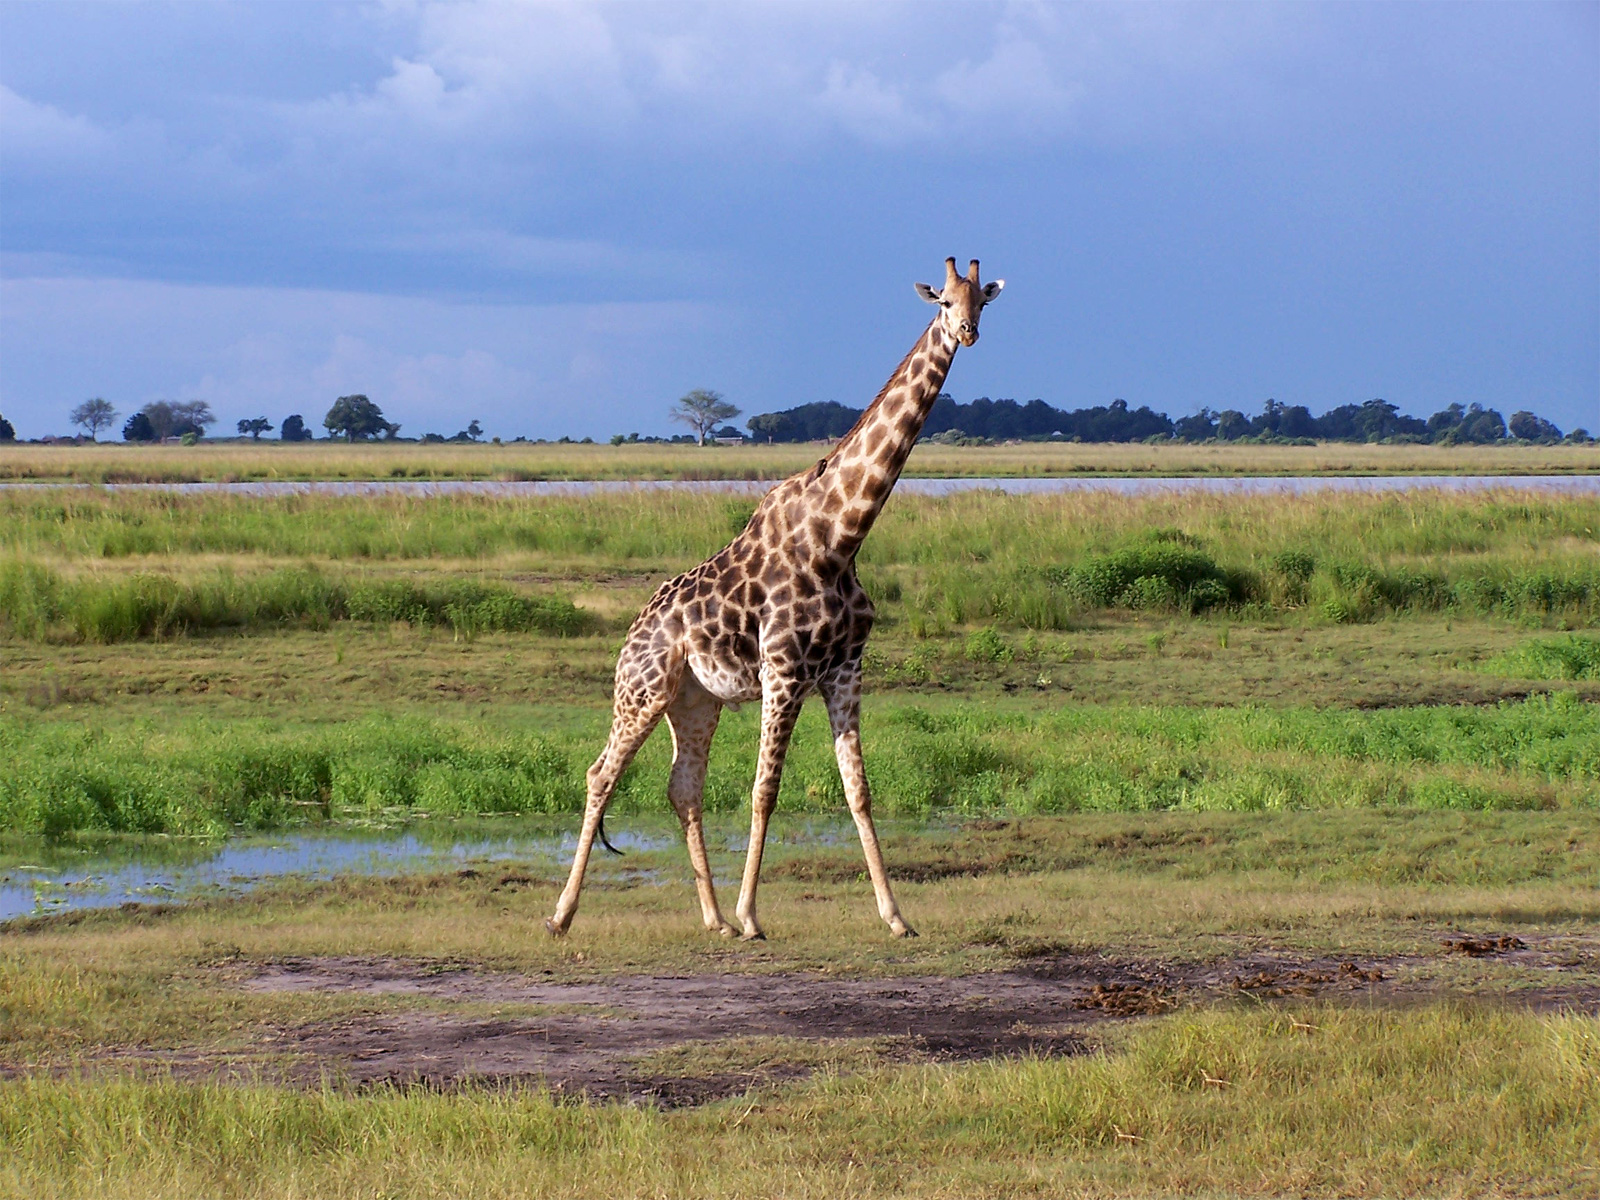 An African Giraffe Roaming The Plains - Giraffe - HD Wallpaper 